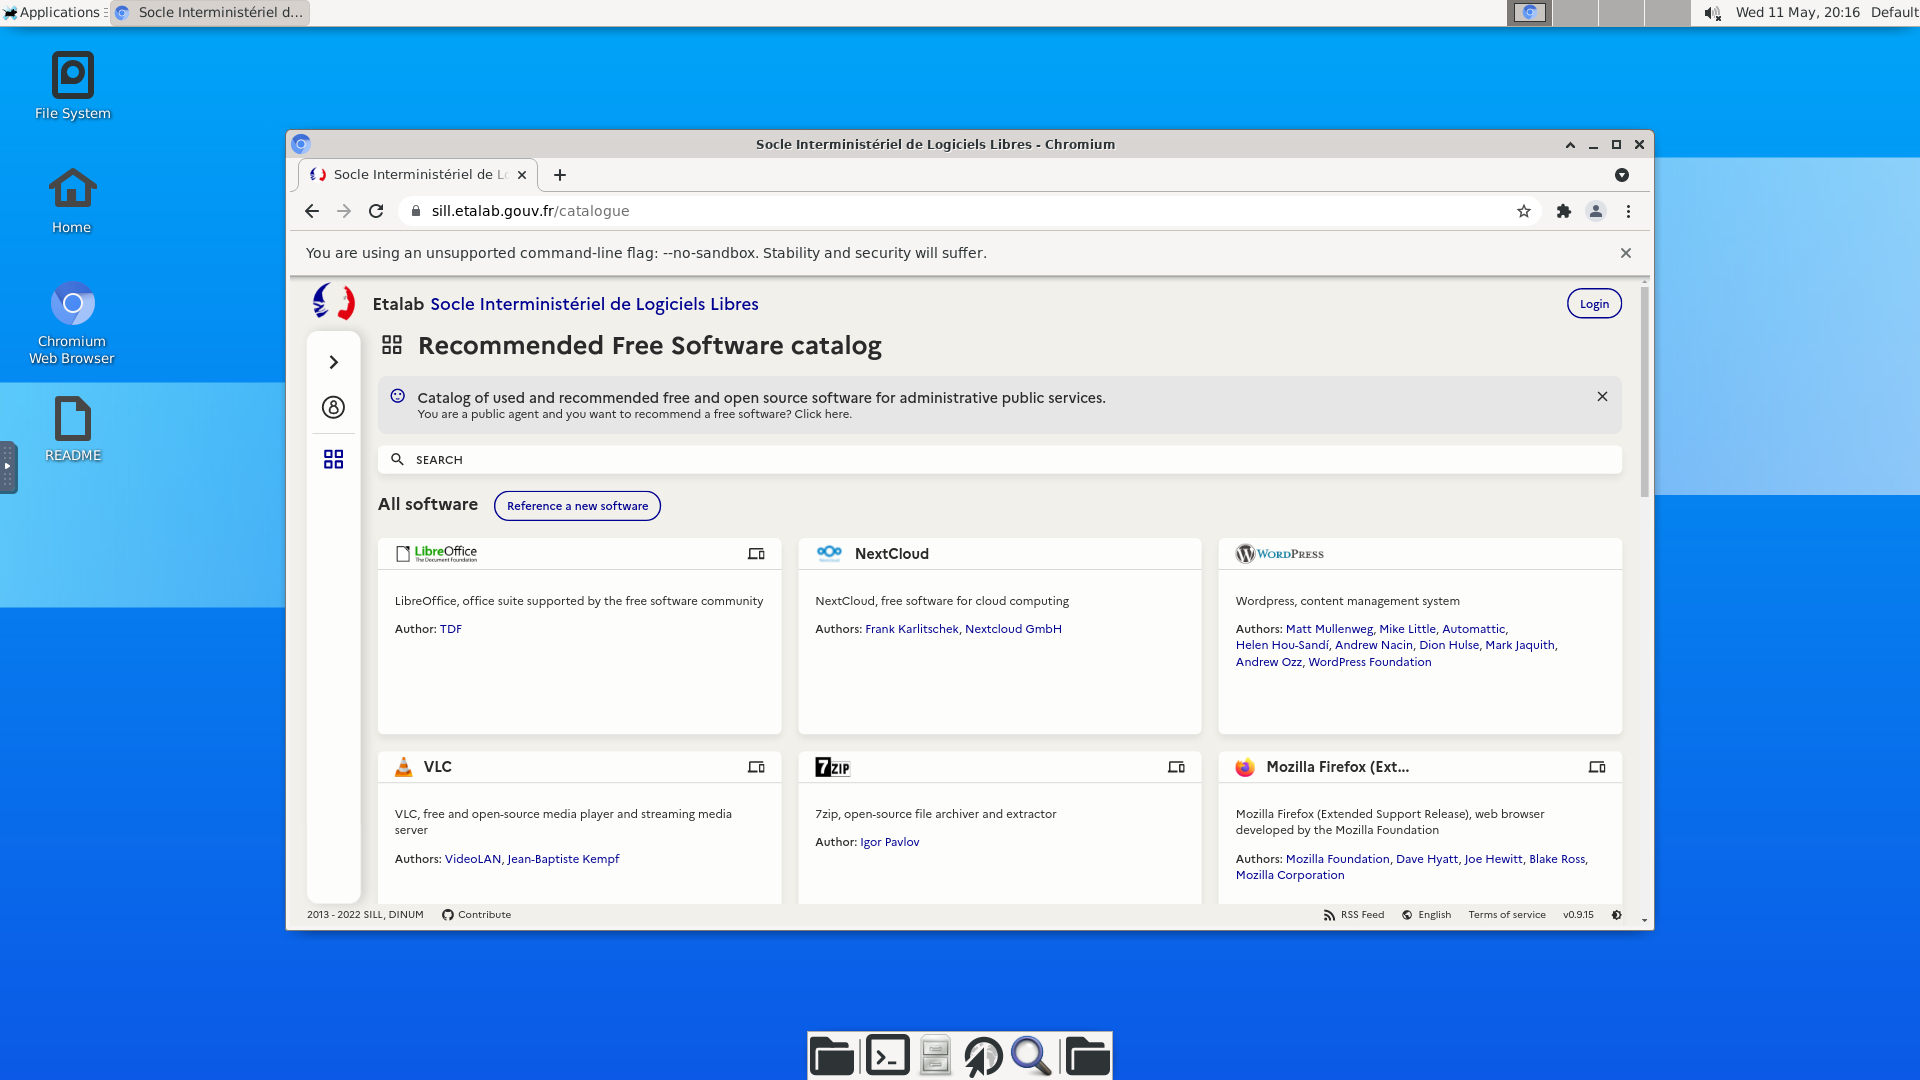 Capture d'écran de Chromium tournant dans une distribution GNU/Linux